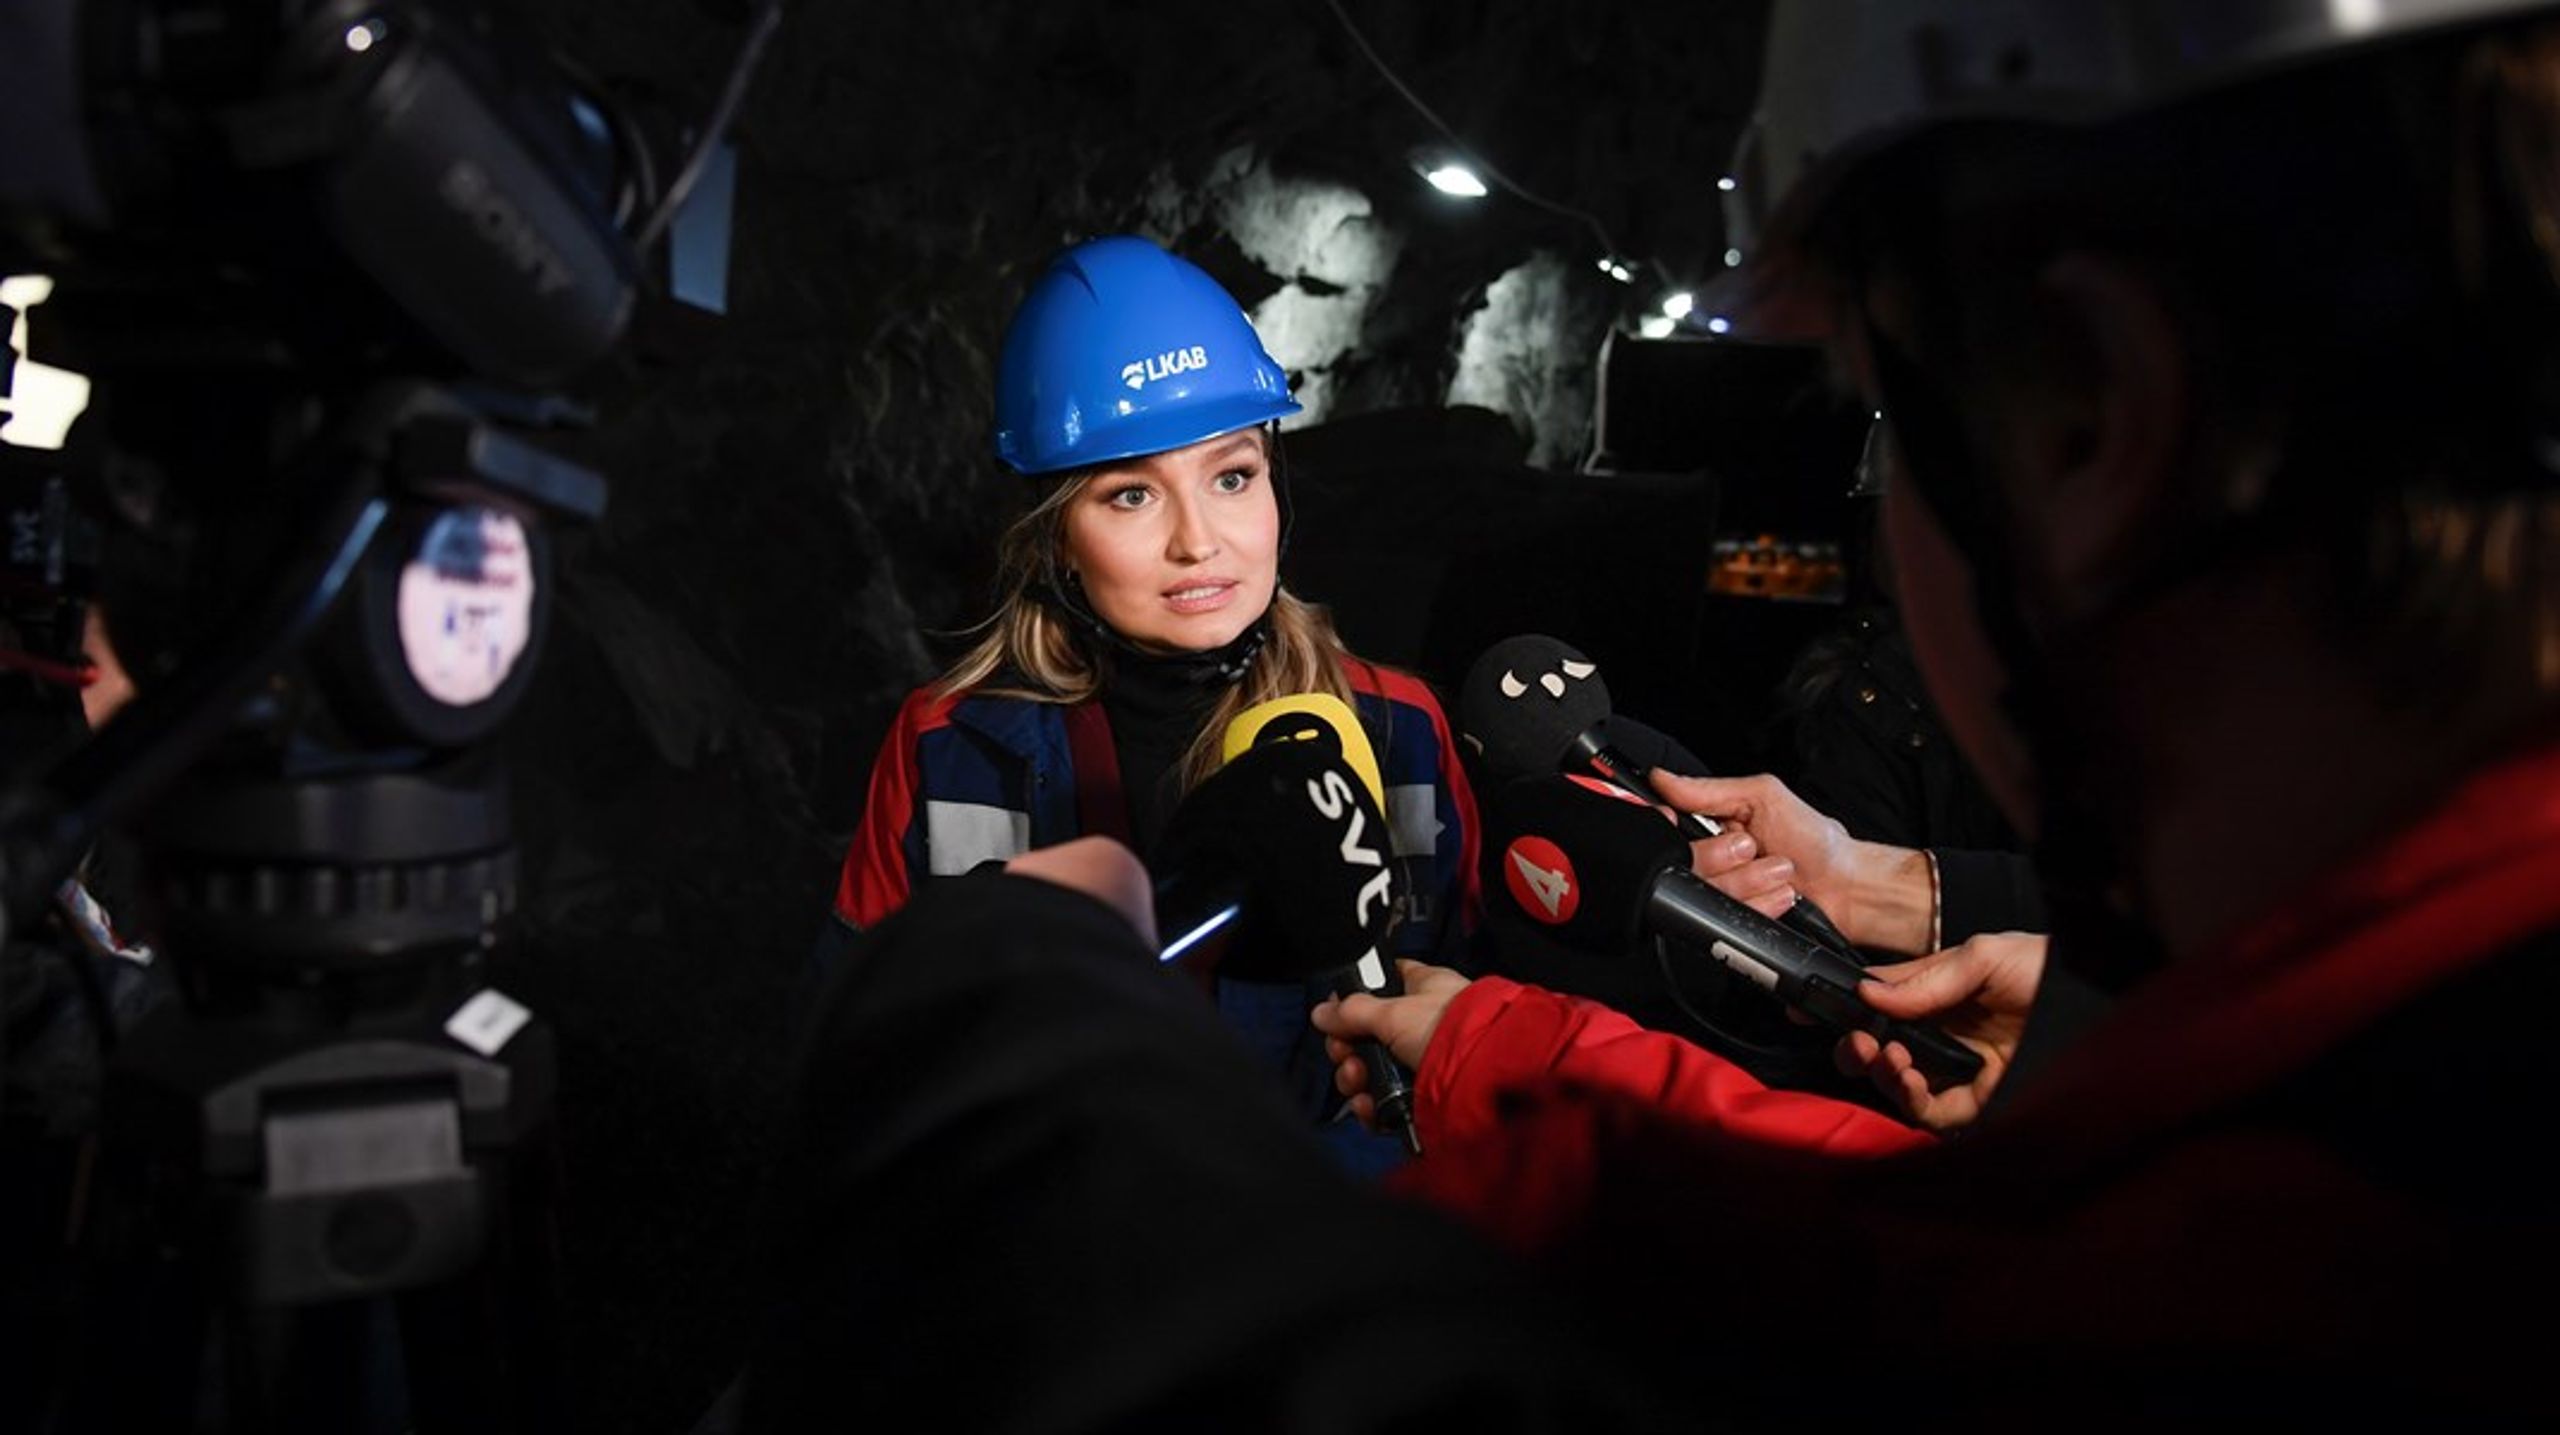 Gruvministern. Det öppnas för få gruvor i Sverige enligt regeringen och energi- och näringsminister Ebba Busch (KD).